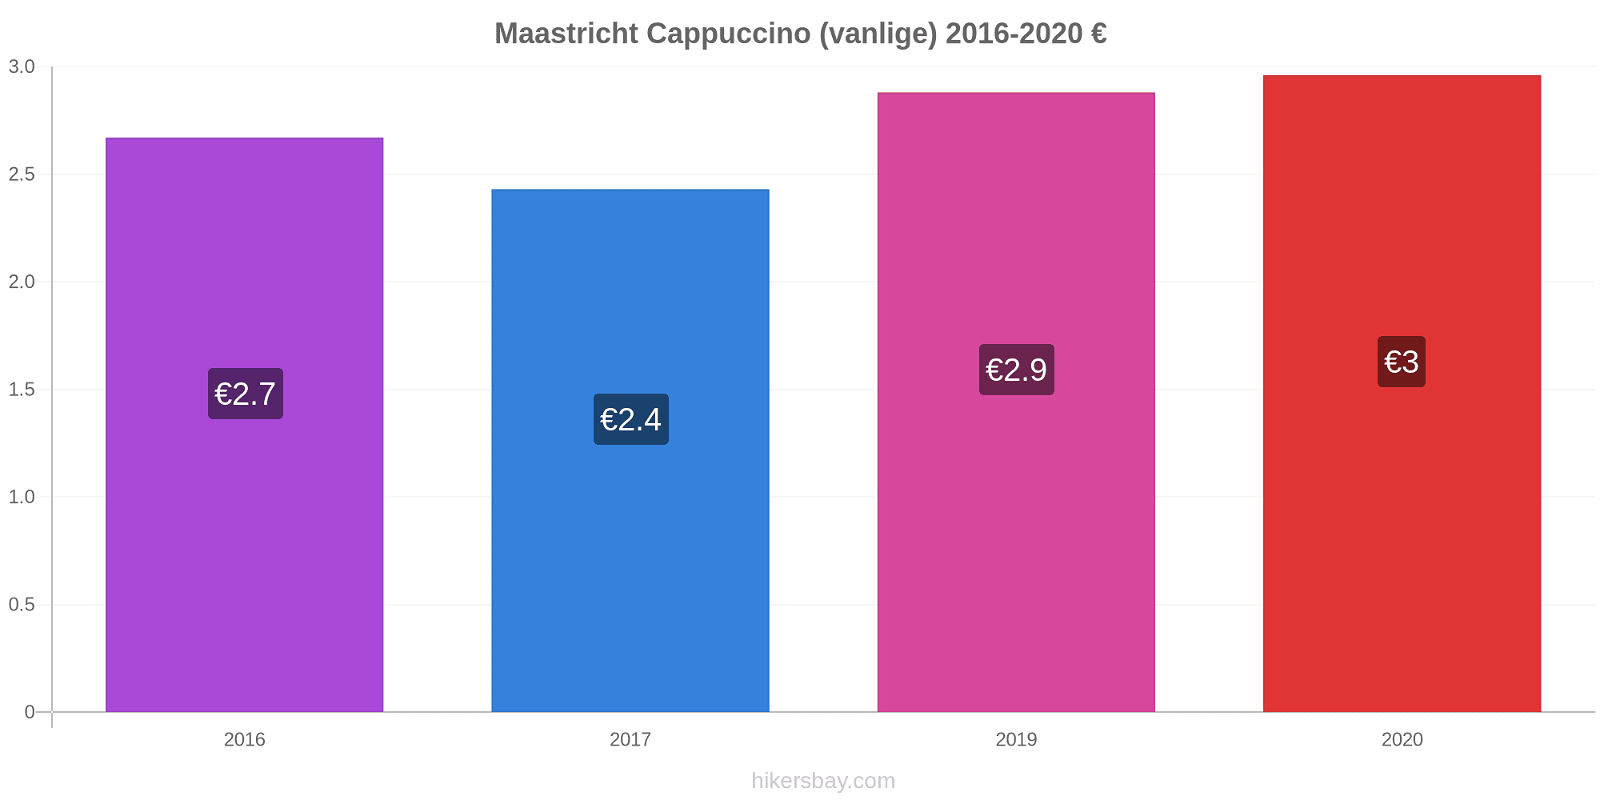 Maastricht prisendringer Cappuccino (vanlige) hikersbay.com